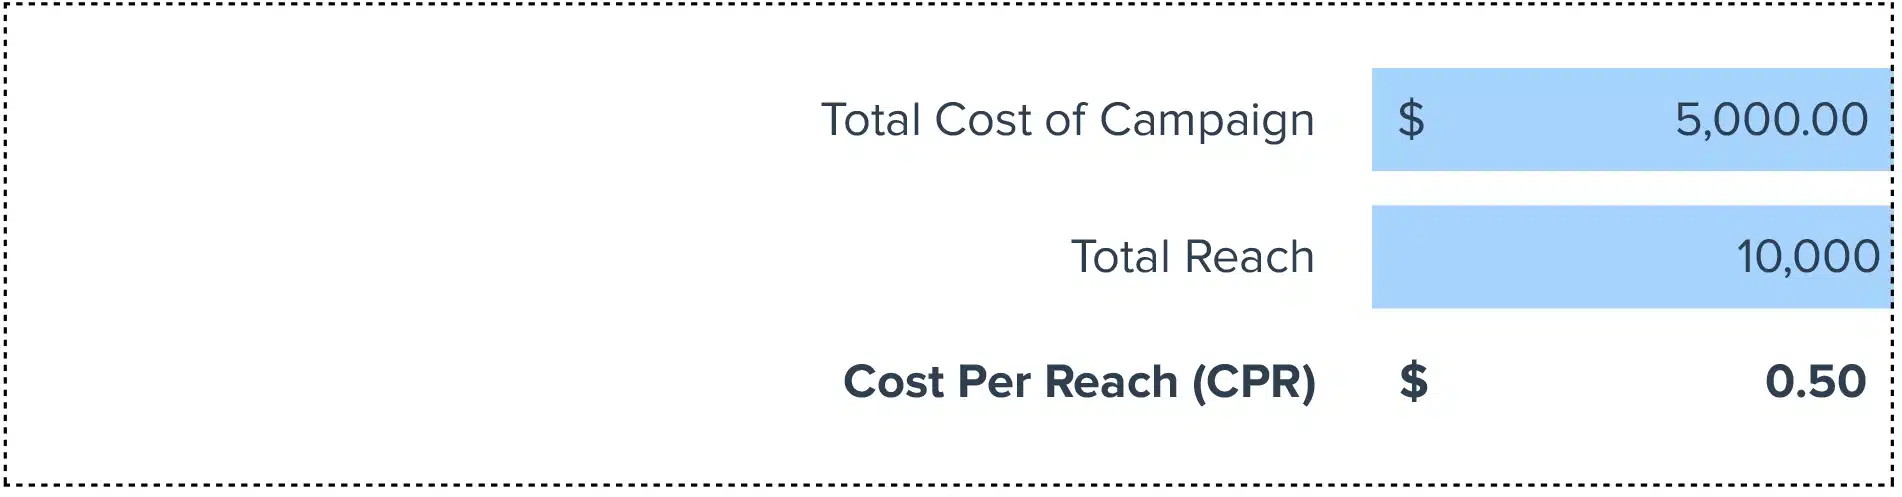 Cost per Reach